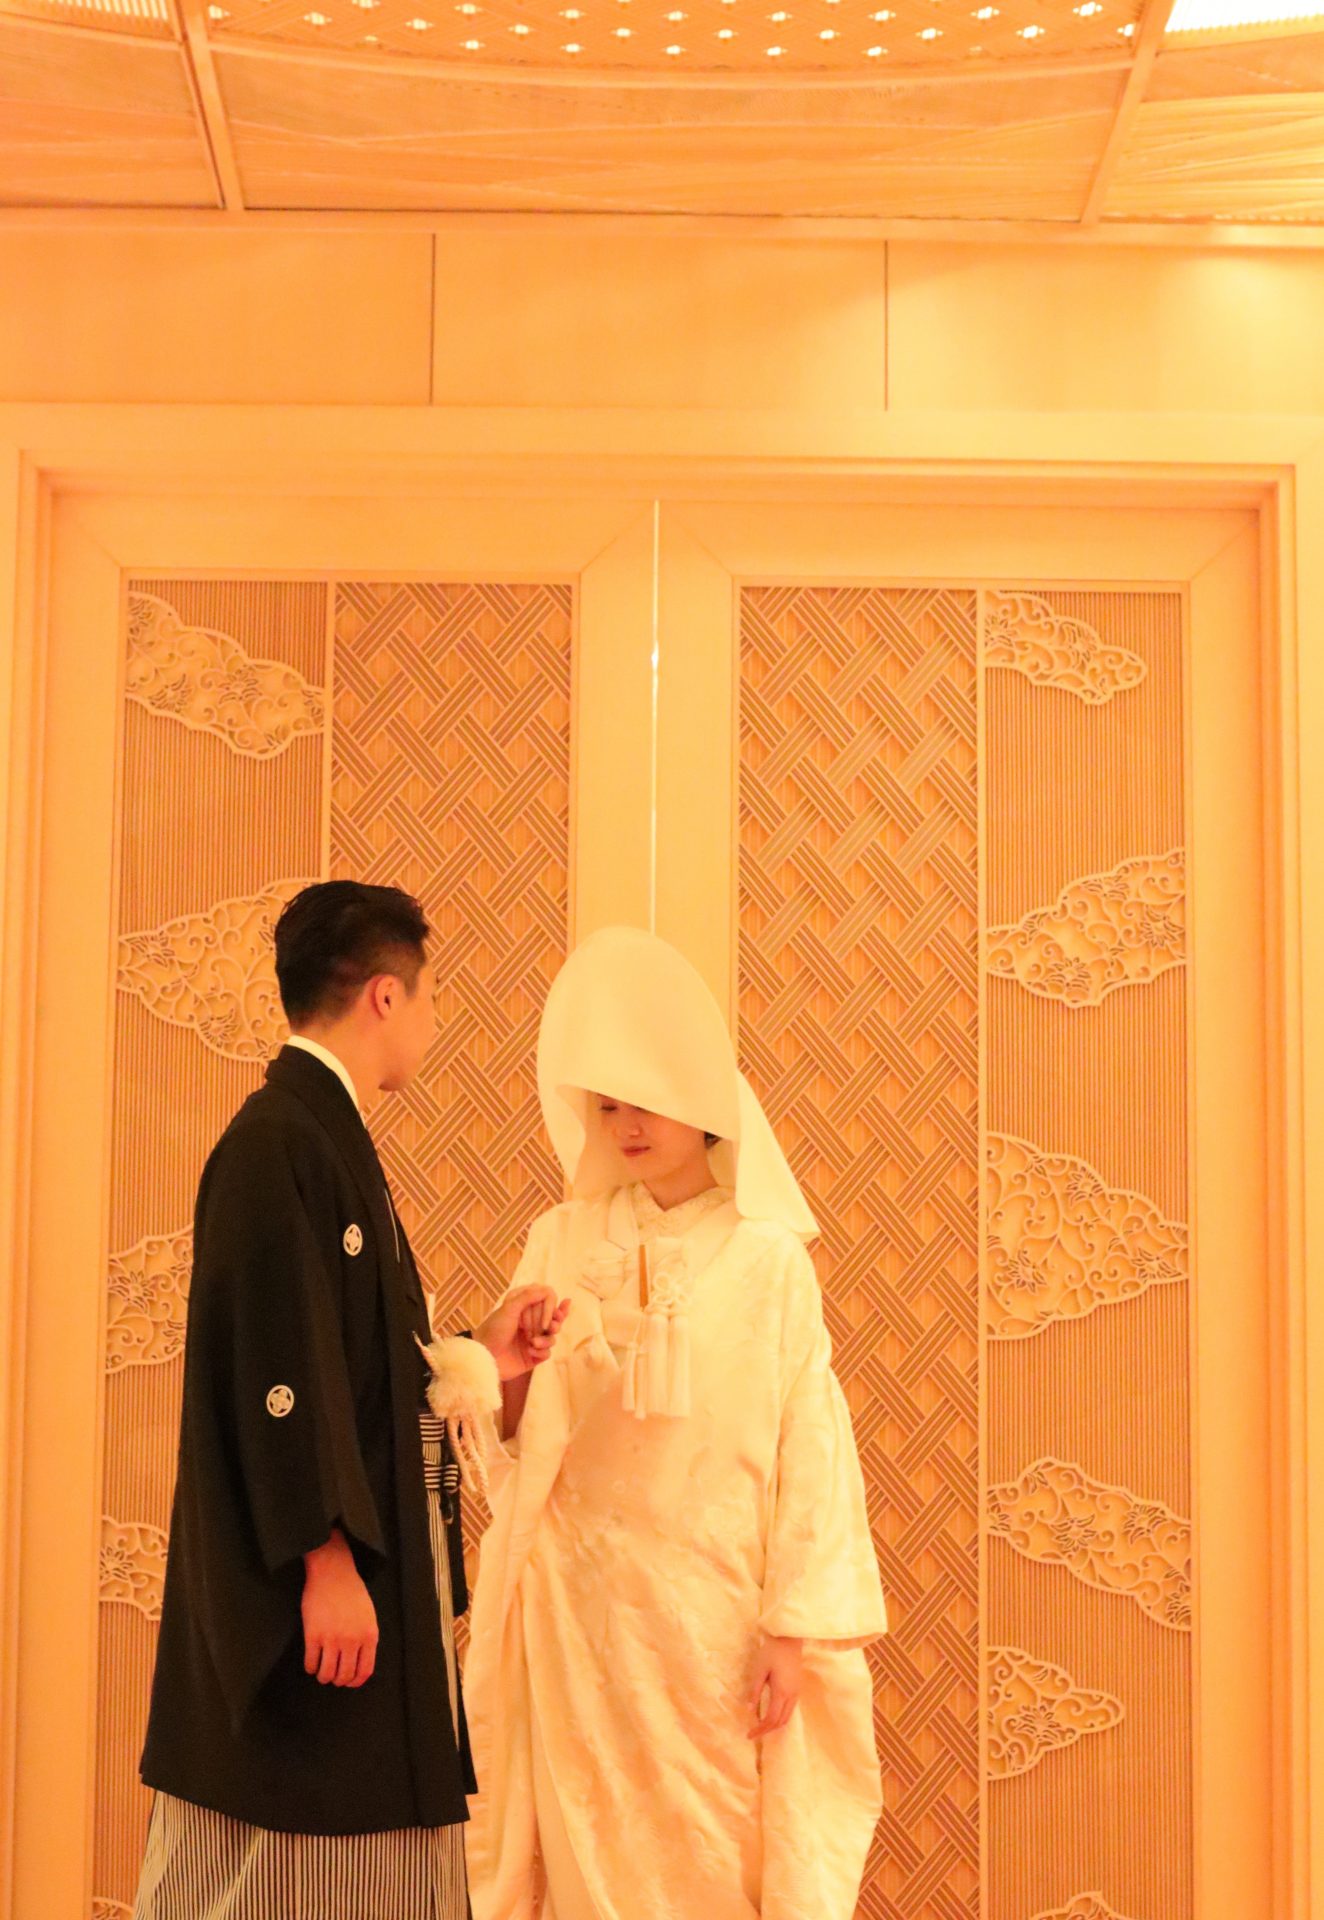 和婚をお考えの新郎新婦様に是非お勧めしたいパレスホテル東京の神殿での結婚式では、提携ドレスショップであるザ・トリート・ドレッシングアディション店の格式高い紋付羽織袴と白無垢をお勧めいたします